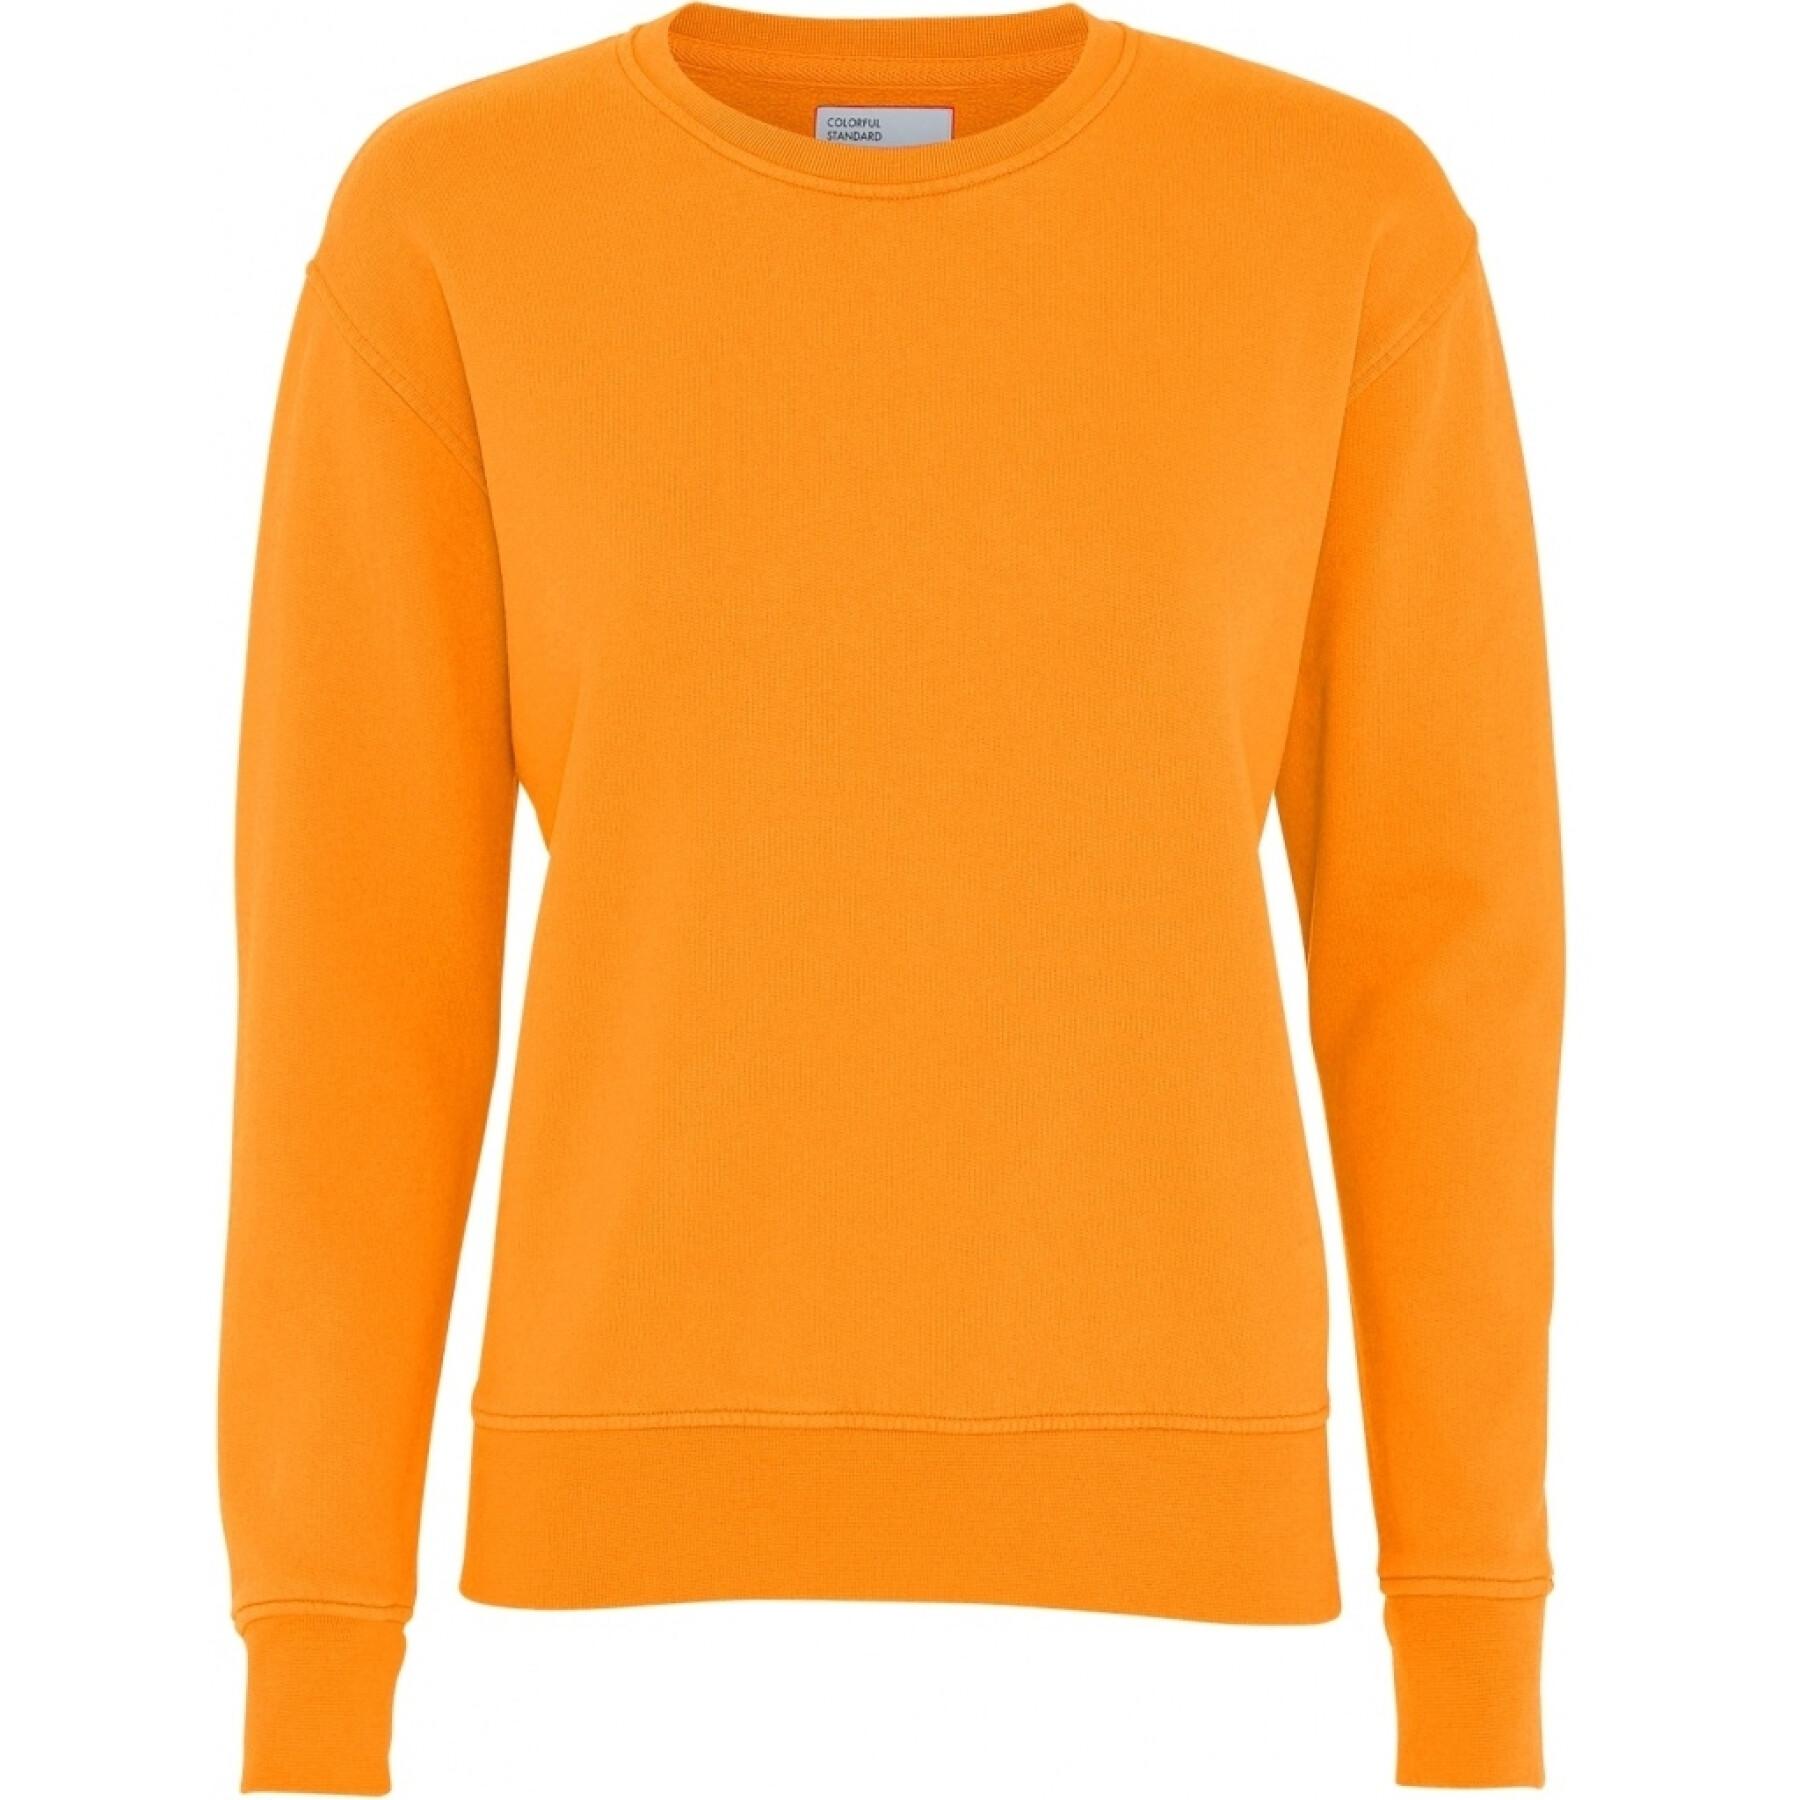 Maglione girocollo da donna Colorful Standard Classic Organic sunny orange